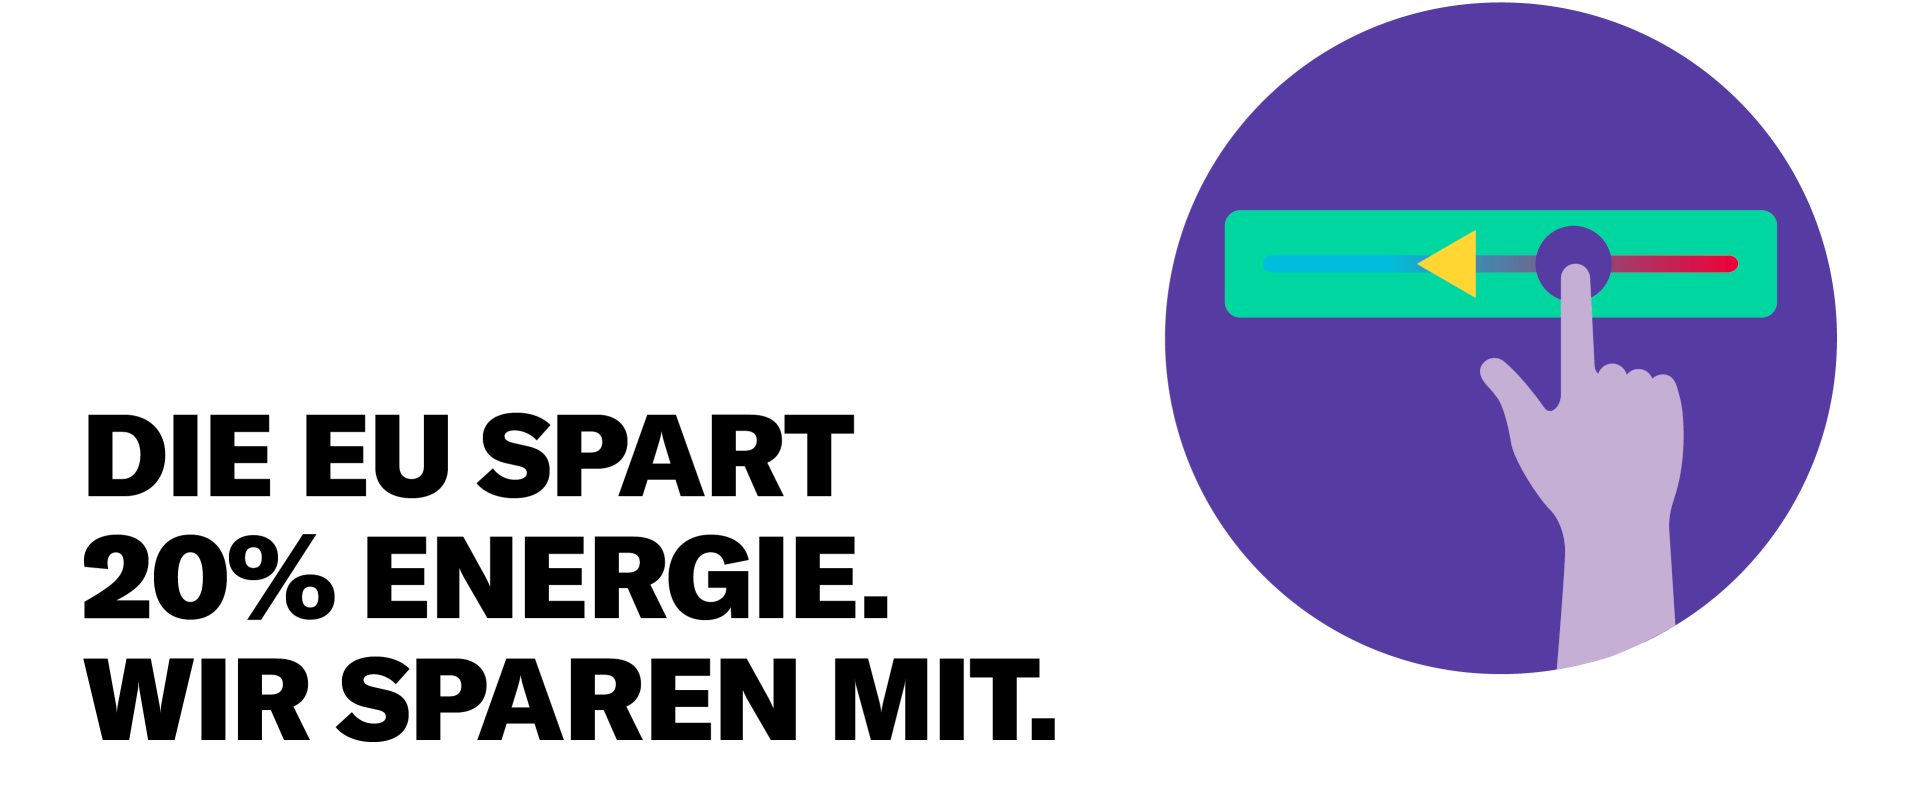 Illustration eines grünen Schiebereglers, der nach links verschoben wird, auf einem violetten Hintergrund.